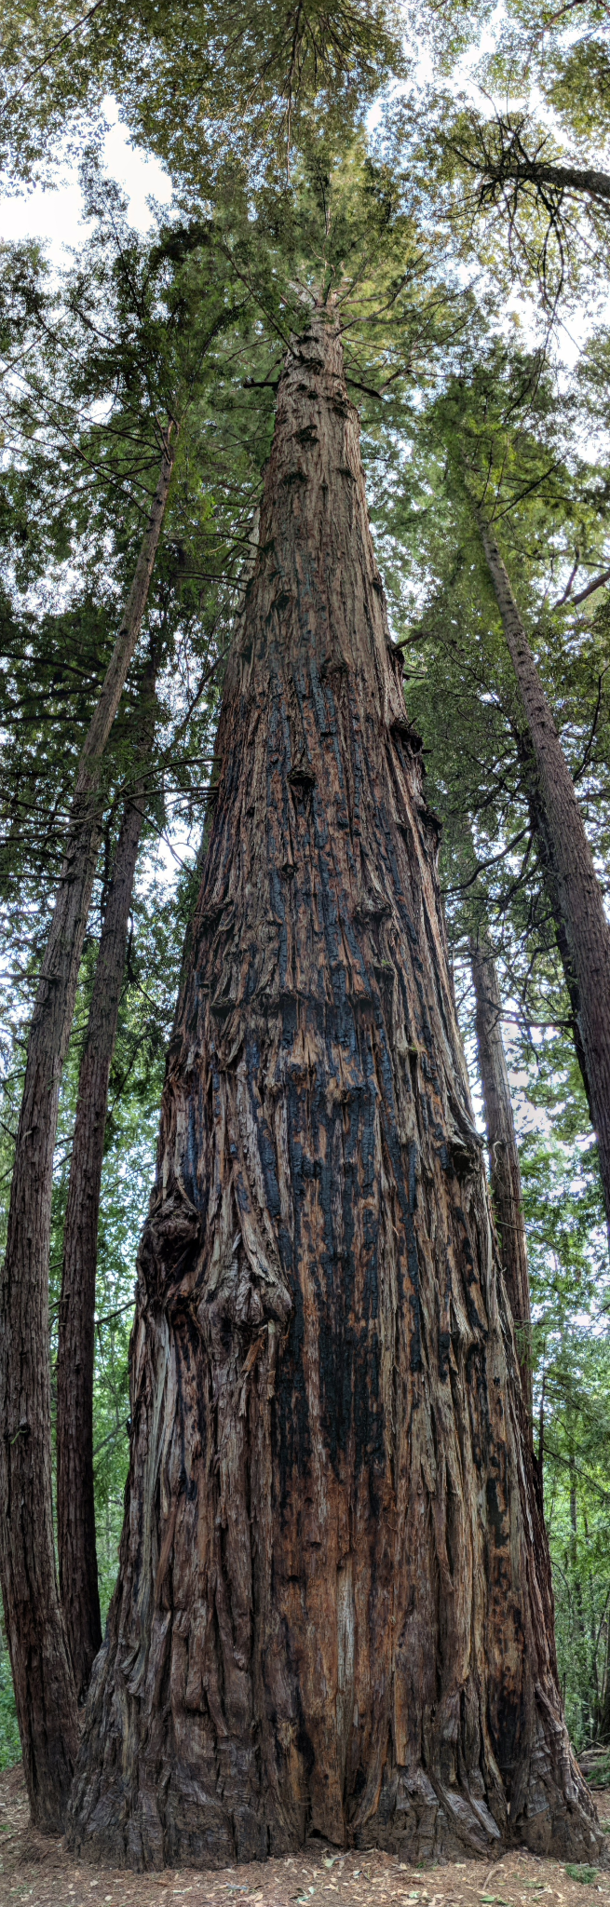 A beautiful tree in Santa Cruz California oc